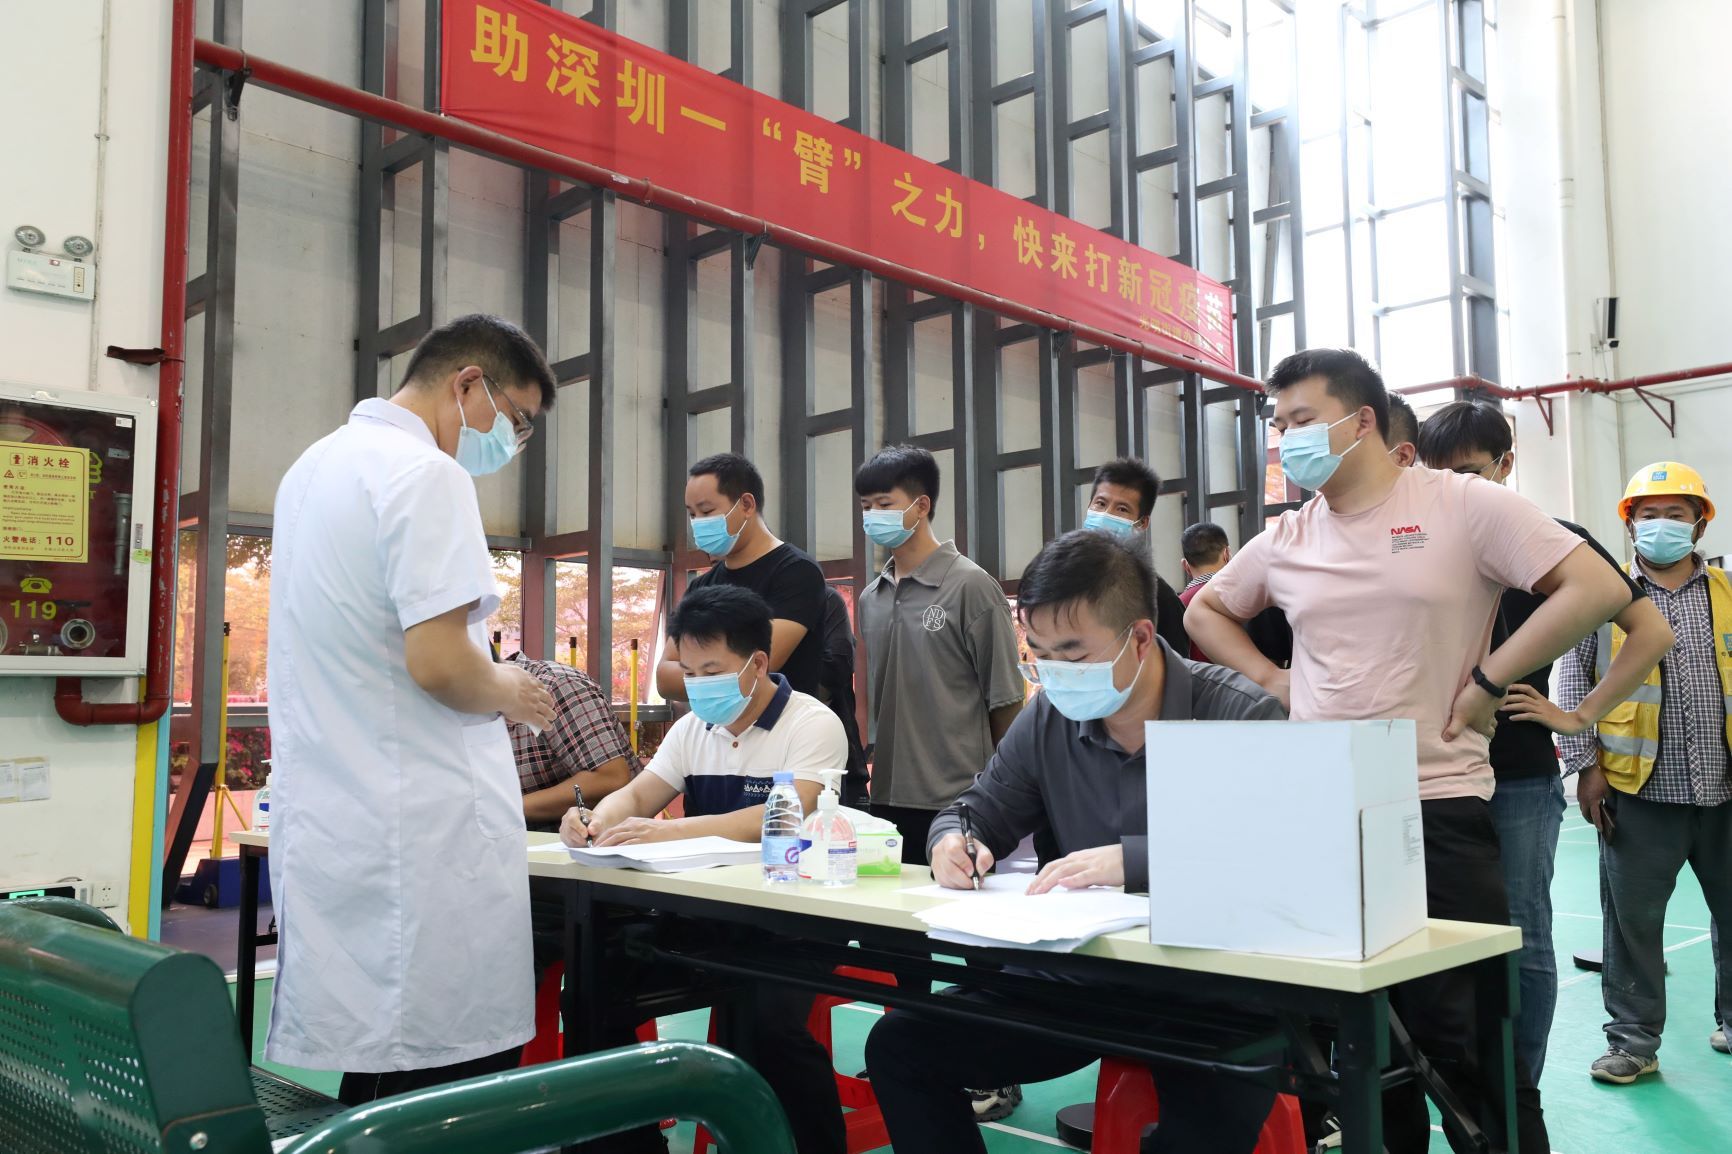 蓬江区新型冠状病毒肺炎疫情防控指挥部办公室开通2条疫苗接种公交专线
